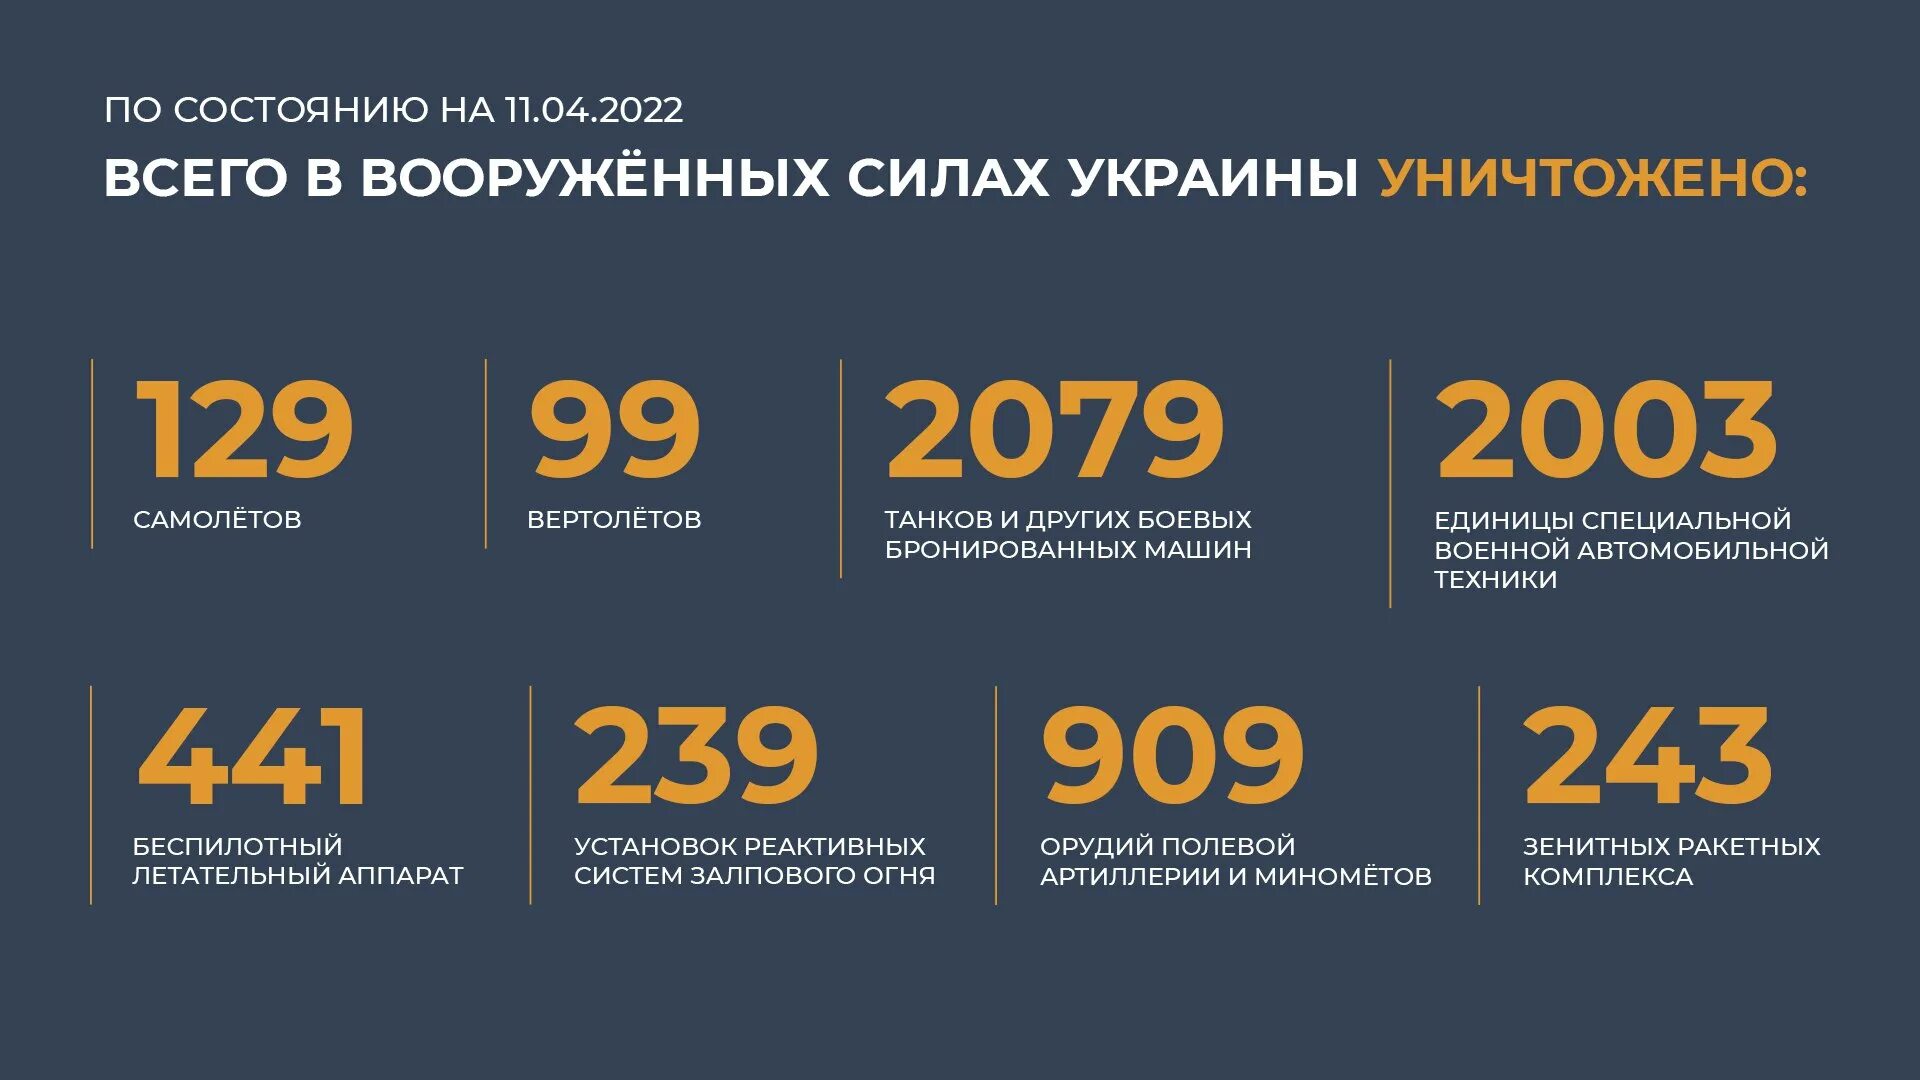 Потери украины 2022 года